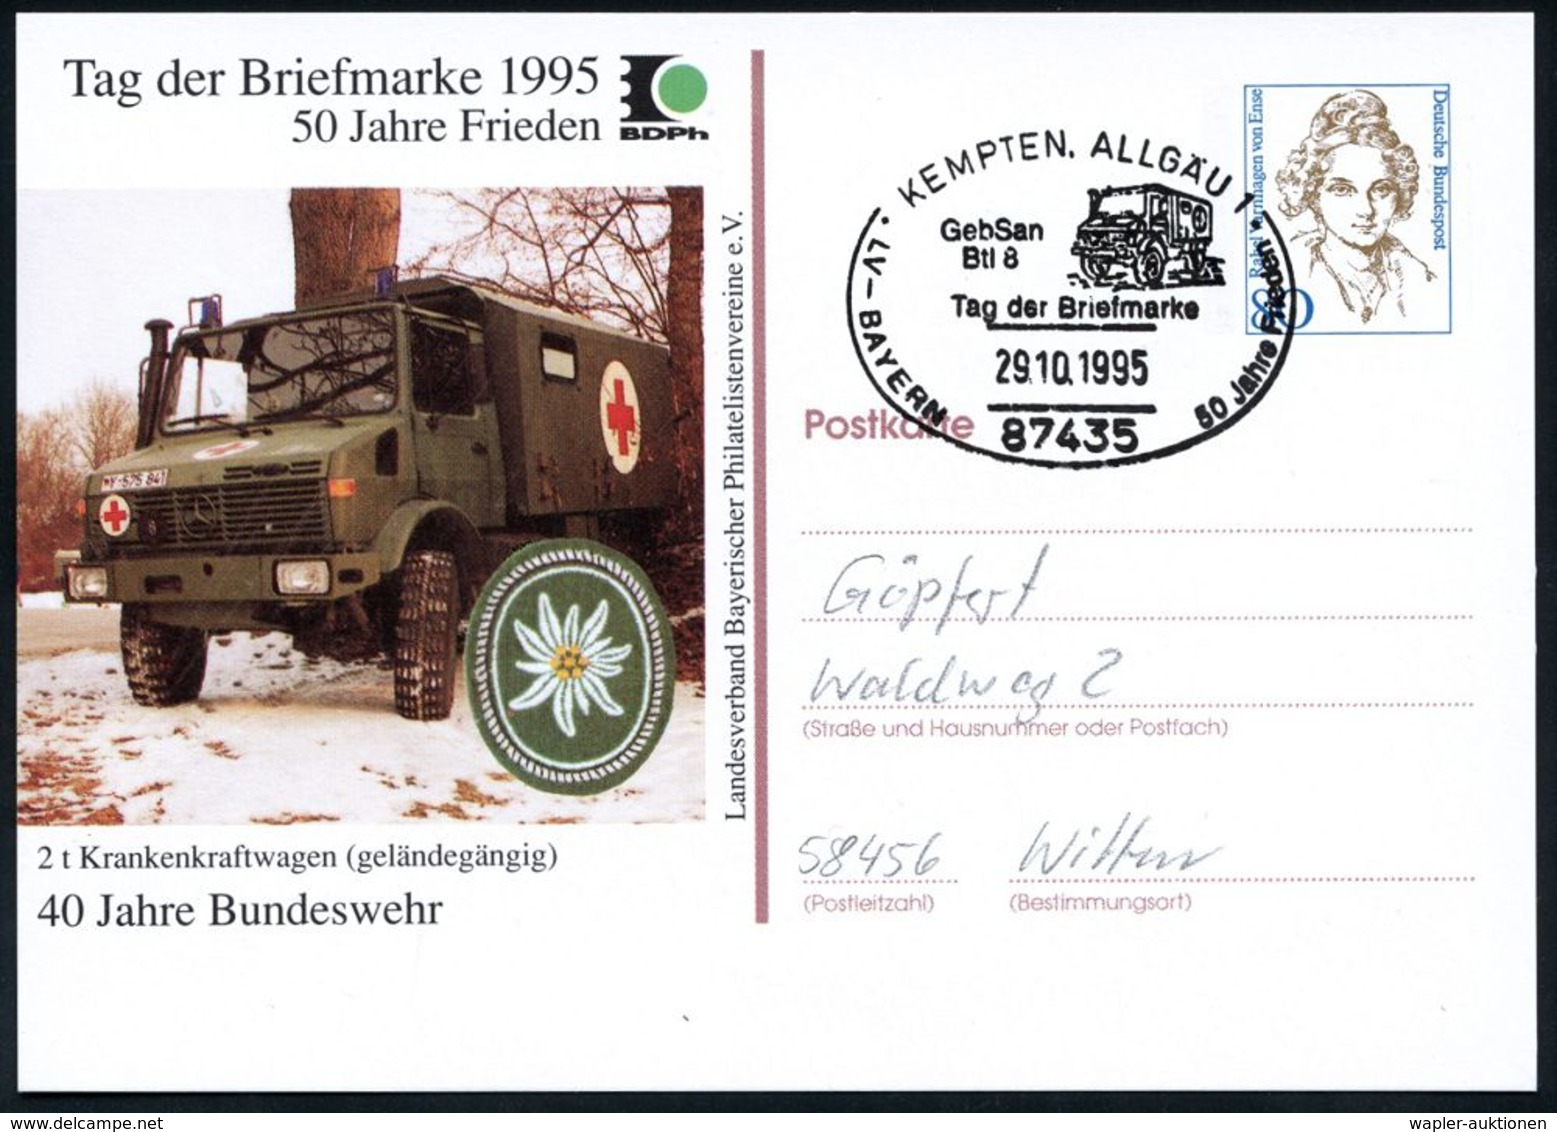 KRAFTFAHR-TRUPPEN / MILITÄR-KFZ. (ohne PANZER) : 87435 KEMPTEN,ALLGÄU 1/ Tag Der Briefmarke.. 1995 (29.10.) SSt = MB "Un - Voitures